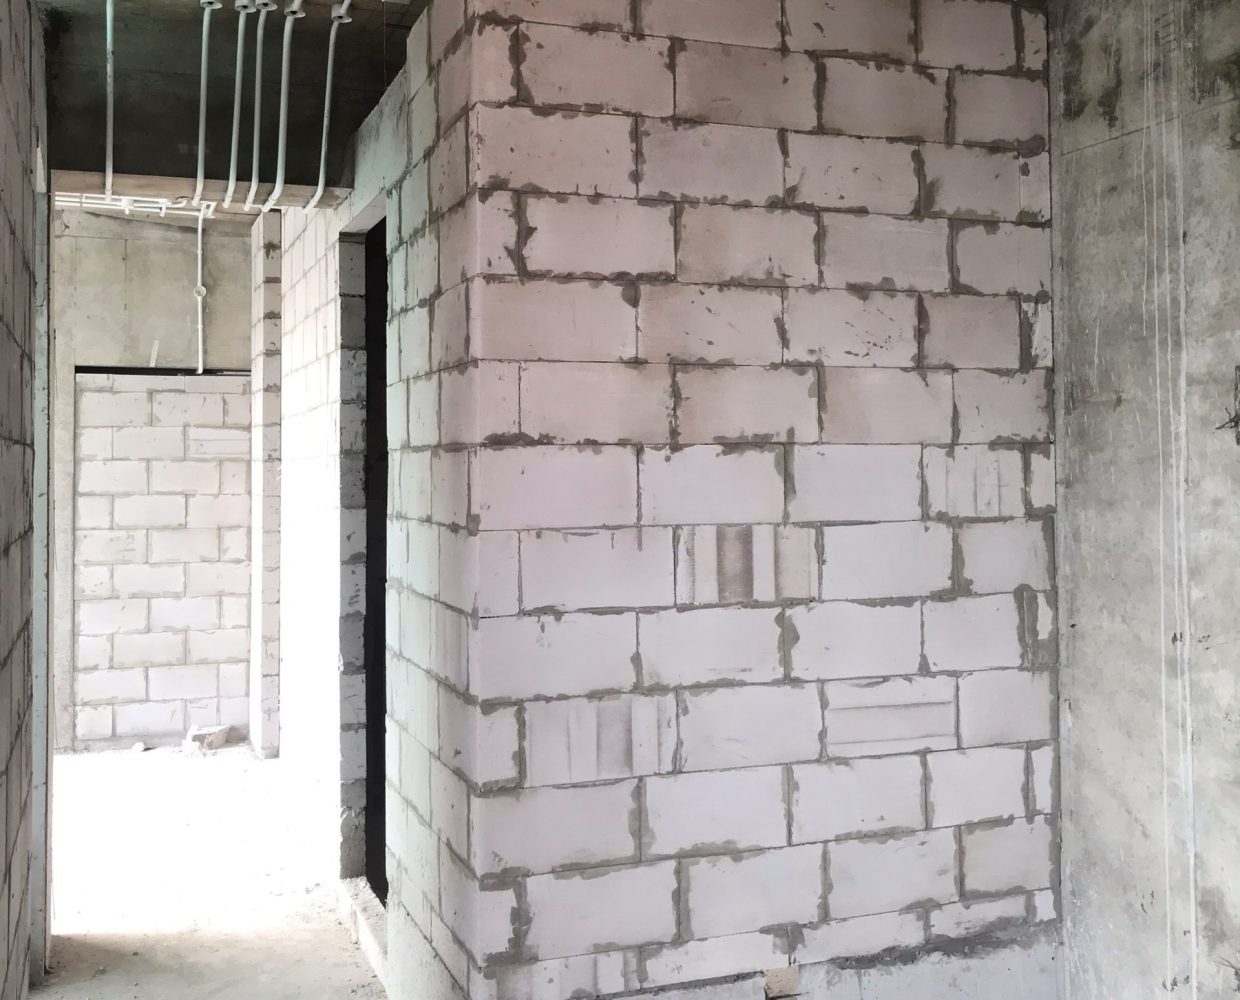 Xây tường gạch AAC EBLOCK giúp cách nhiệt với môi trường bên ngoài và ổn định nhiệt môi trường bên trong